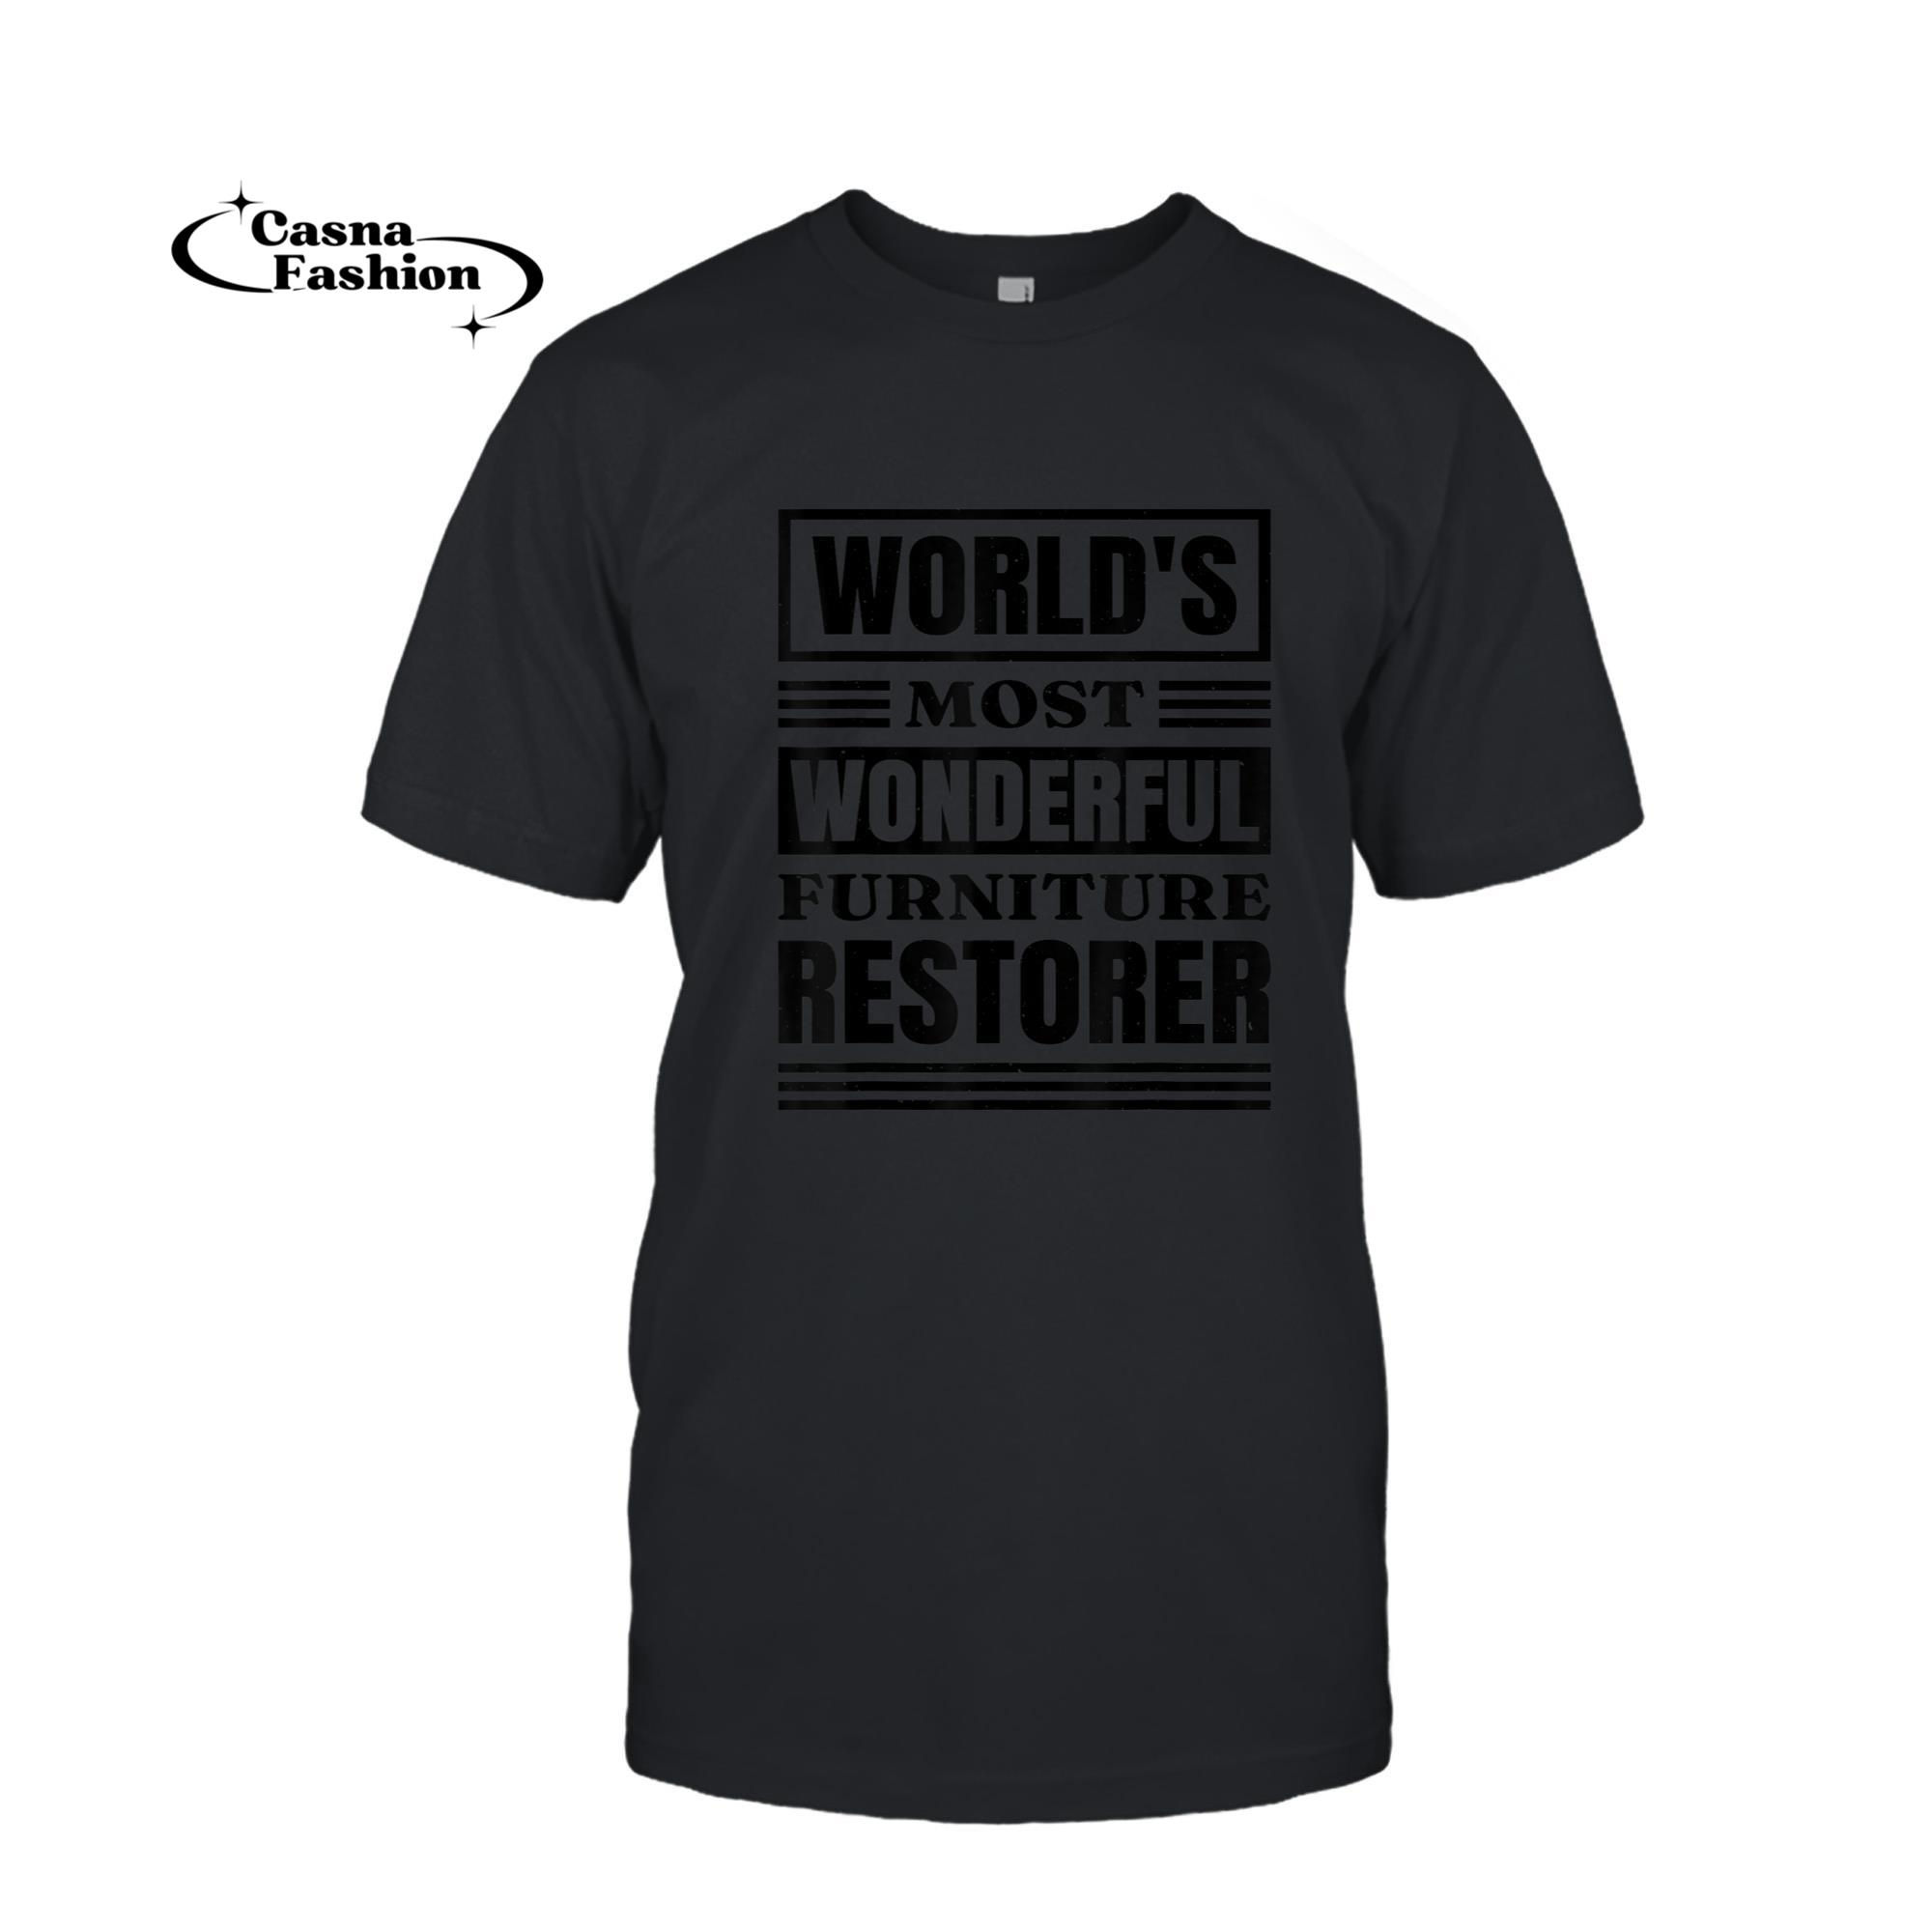 casnafashion_T-shirt_World'S Wonderful Furniture Restorer, Furniture Restorer T-Shirt_T-shirt_Black